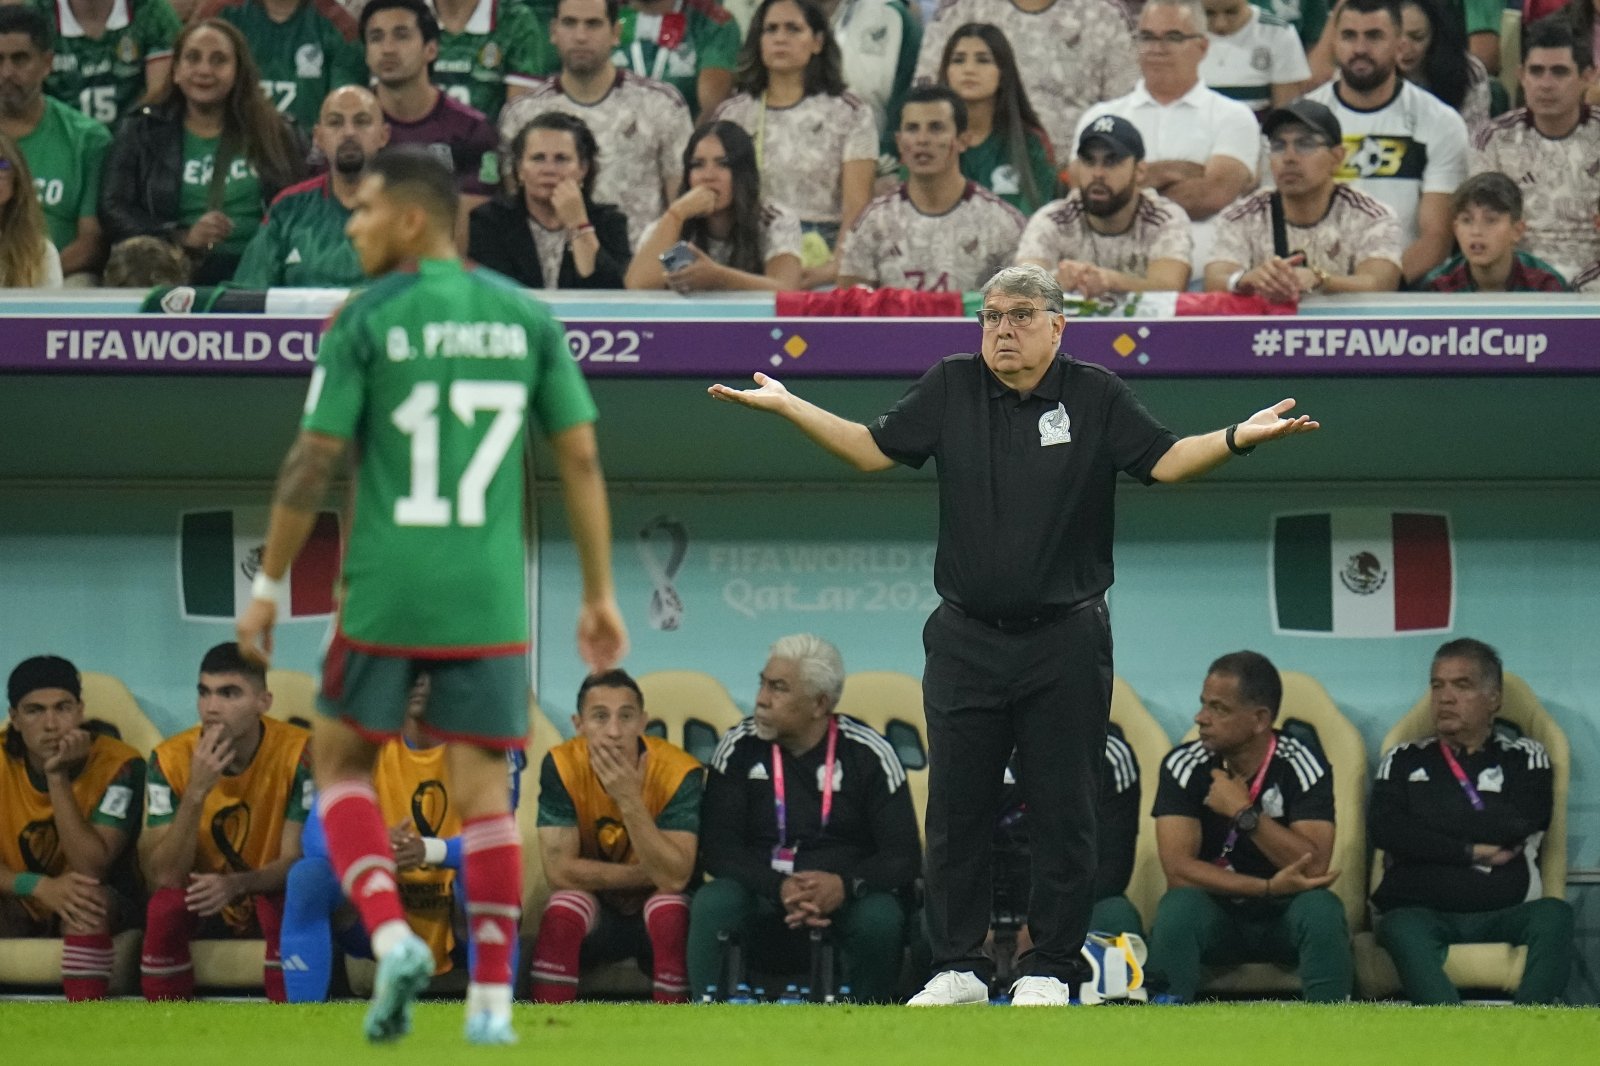 La nazionale messicana, retrocessa con delusione, è stata lasciata dal suo allenatore